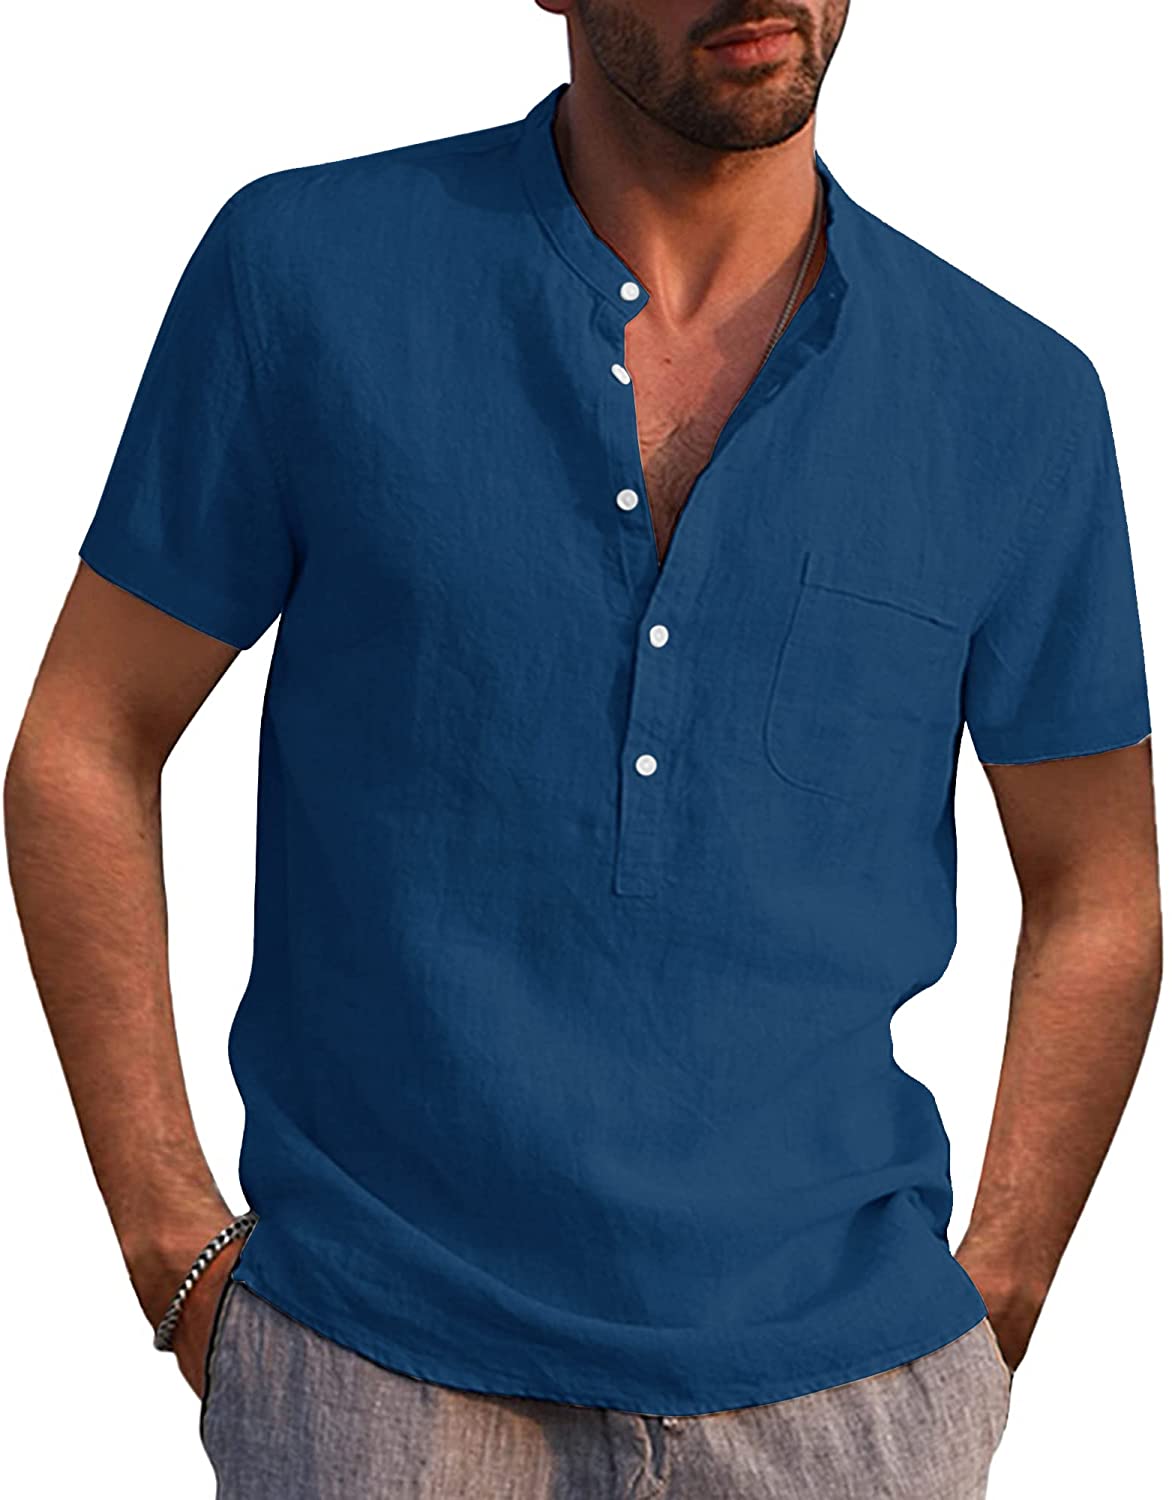 AUDATE Mens Cotton Linen Shirt Casual Long Sleeve Henley Shirt Solid Tops